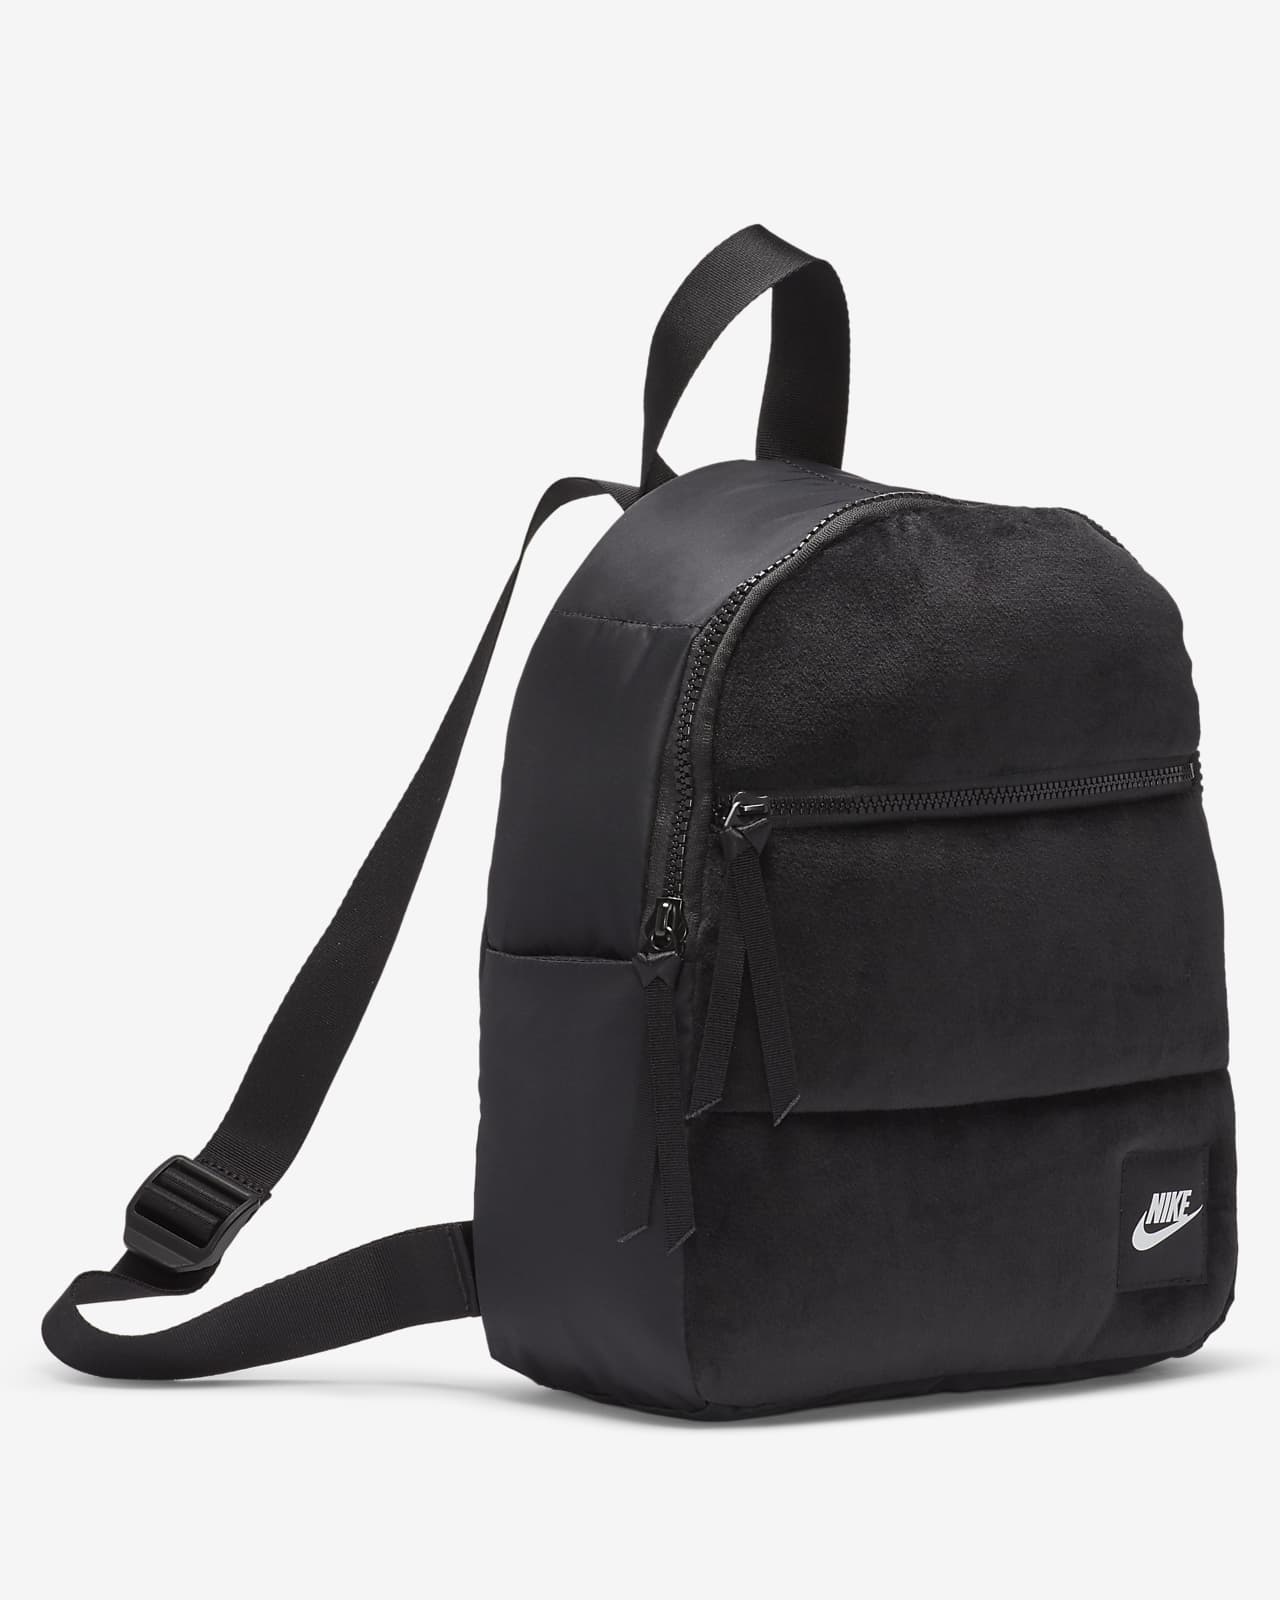 nike black mini backpack